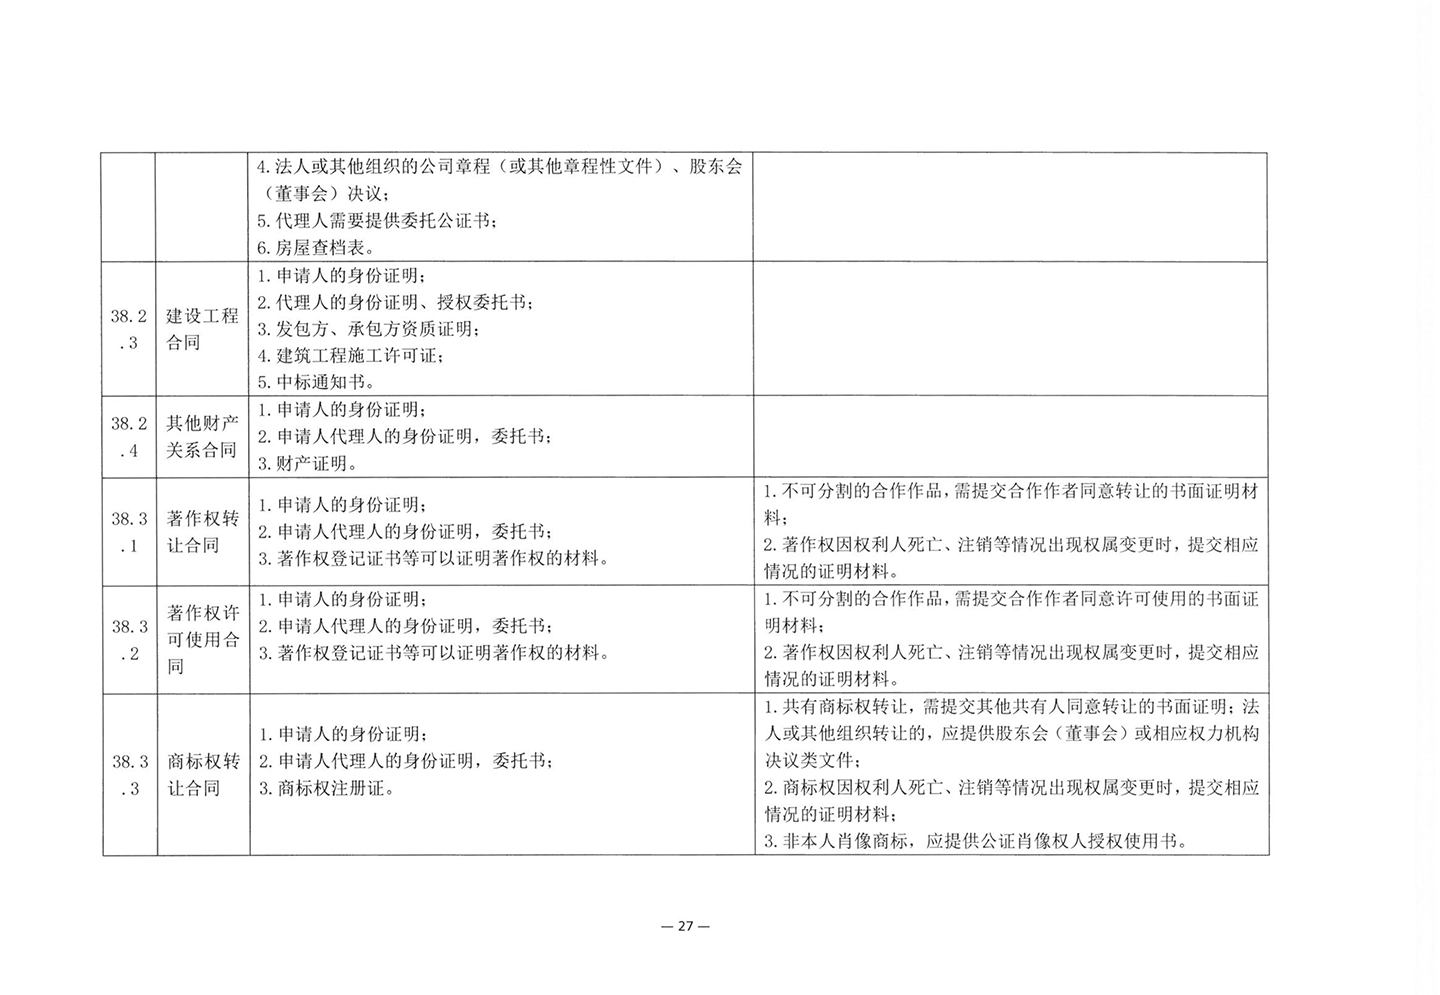 010417243466_03北京市公证协会关于印发《公证机构受理公证事项事务申请证明材料清单》的通知_29